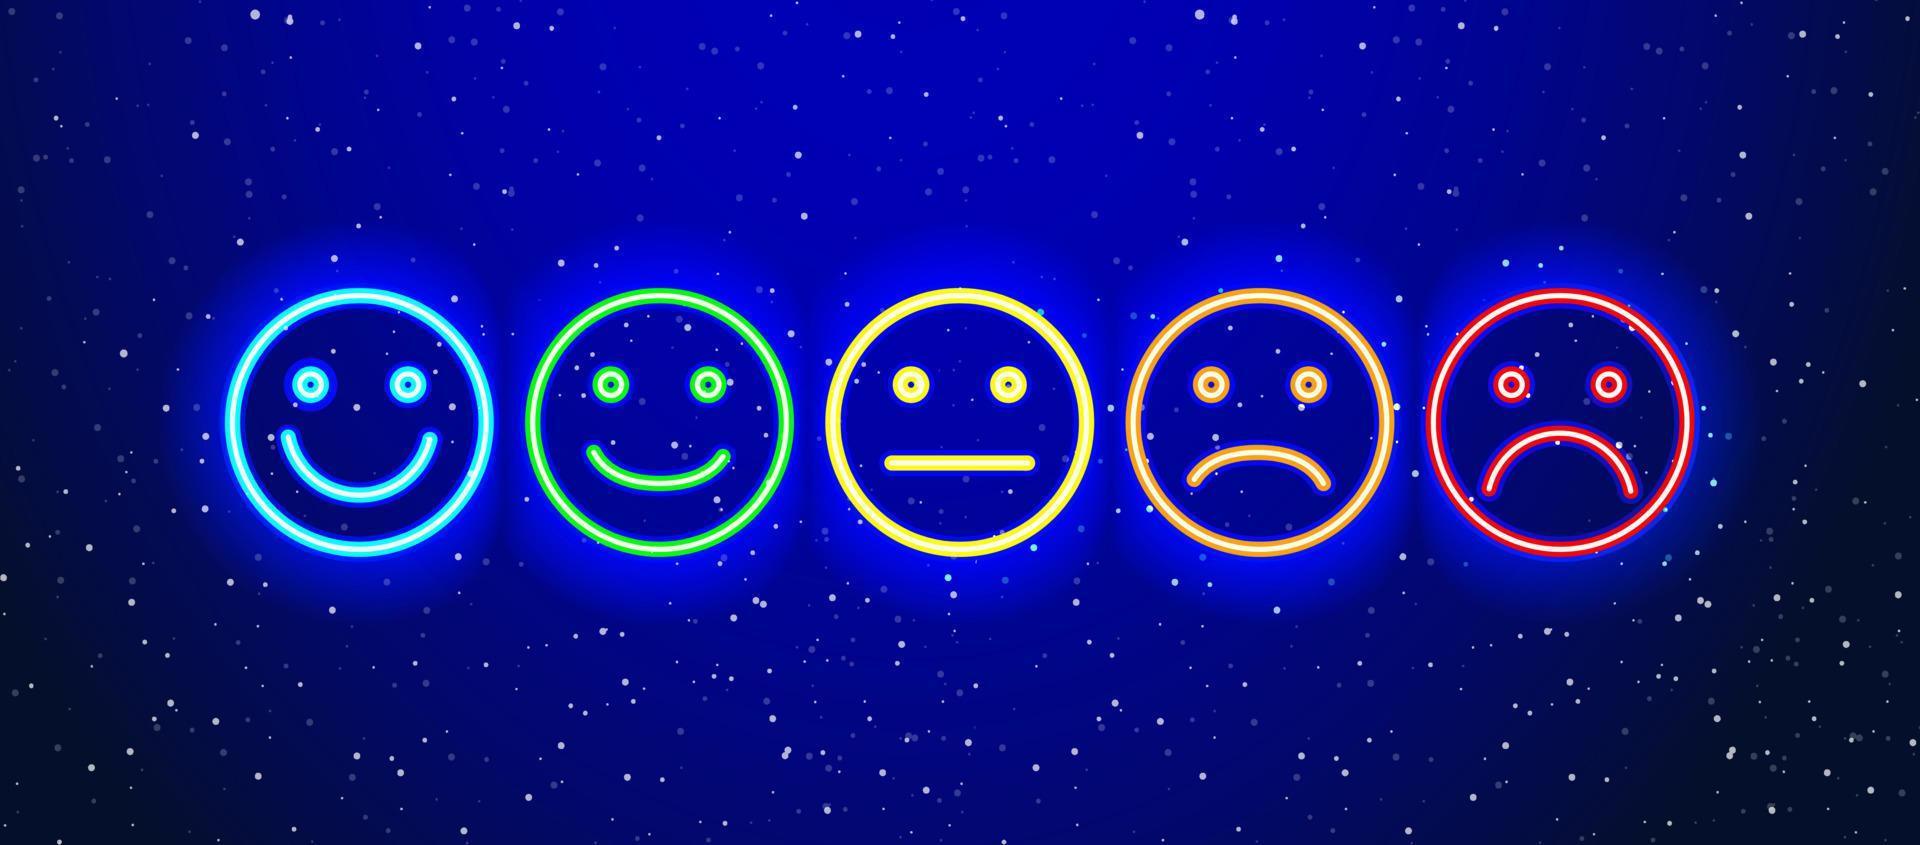 ícone de emoticons coloridos neon. ícone de conjunto de emoticons de choro sorridente neon realista. show noturno de expressão facial neon. isolado no fundo branco. vetor